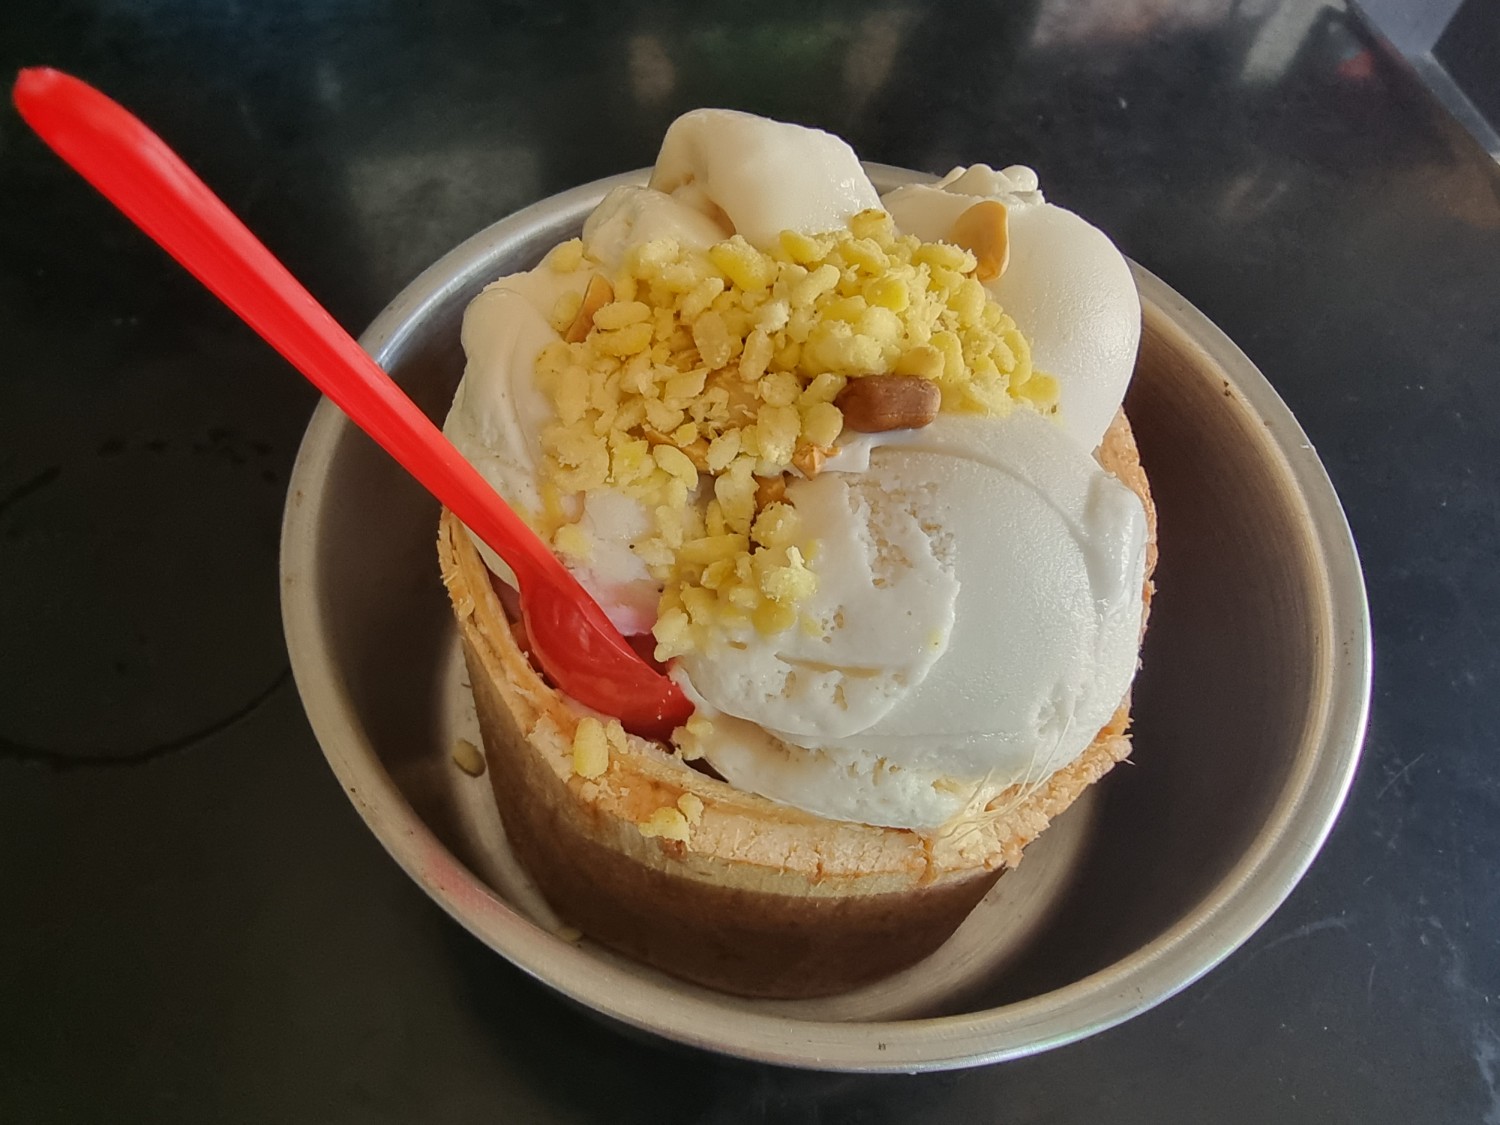 [CR] ไอติม บ้านๆ 🍨🍦🥥🌴นวัตกรรมง่ายๆ ของไอศกรีม อร่อย น่ารักดี แนวคิดดี ไม่แพงด้วย เยี่ยม 😅😋👍 pantip